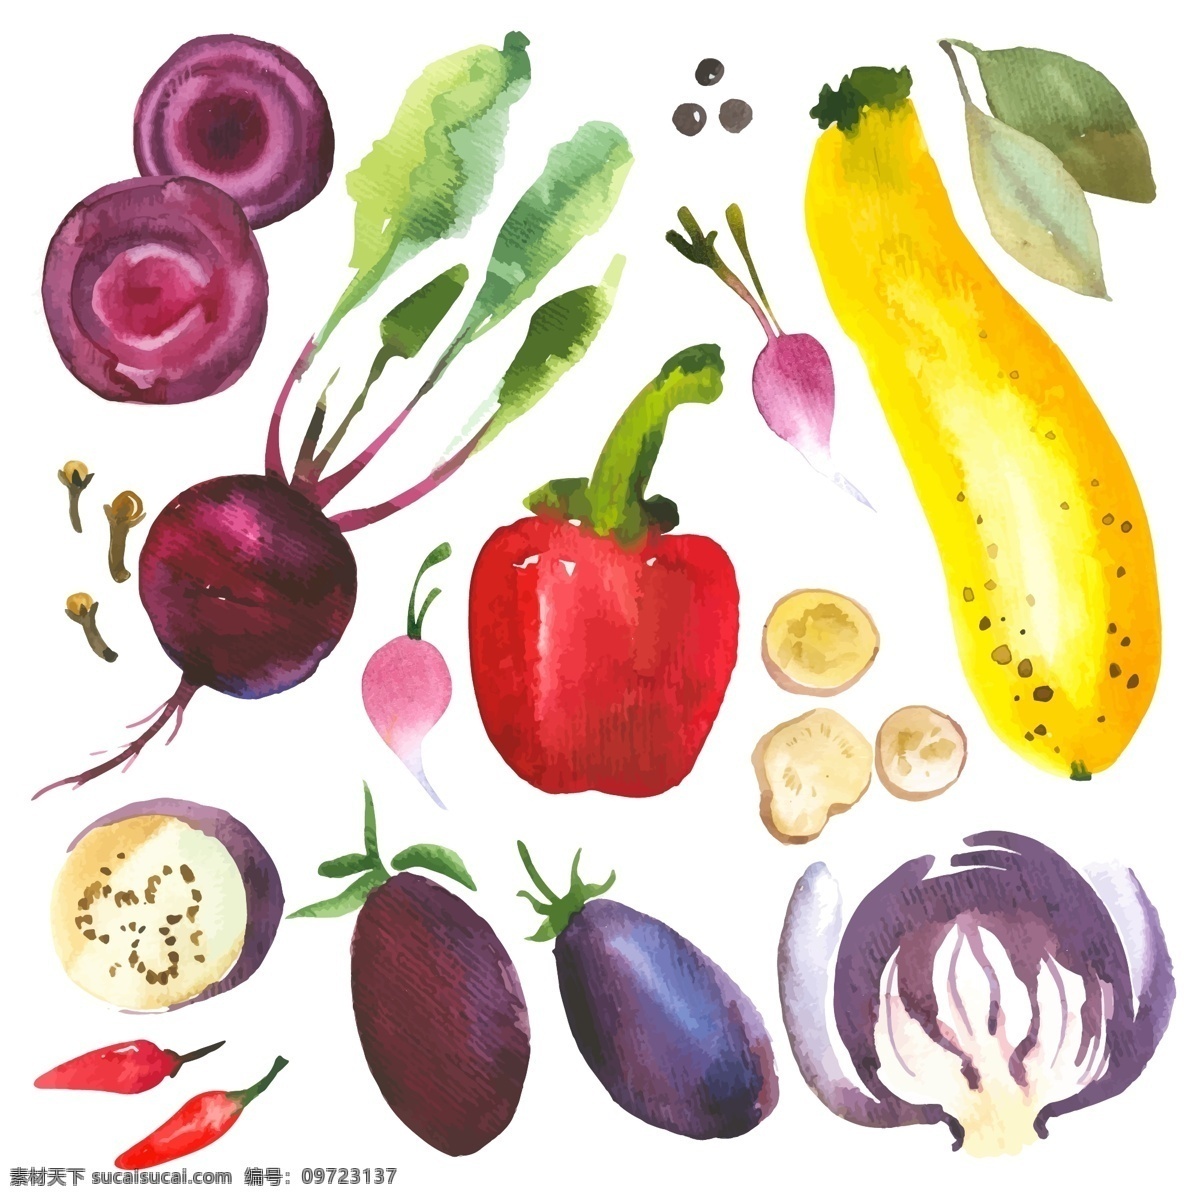 水彩 绘 蔬菜 水果 插画 艺术 唯美 手绘 水彩绘 萝卜 茄子